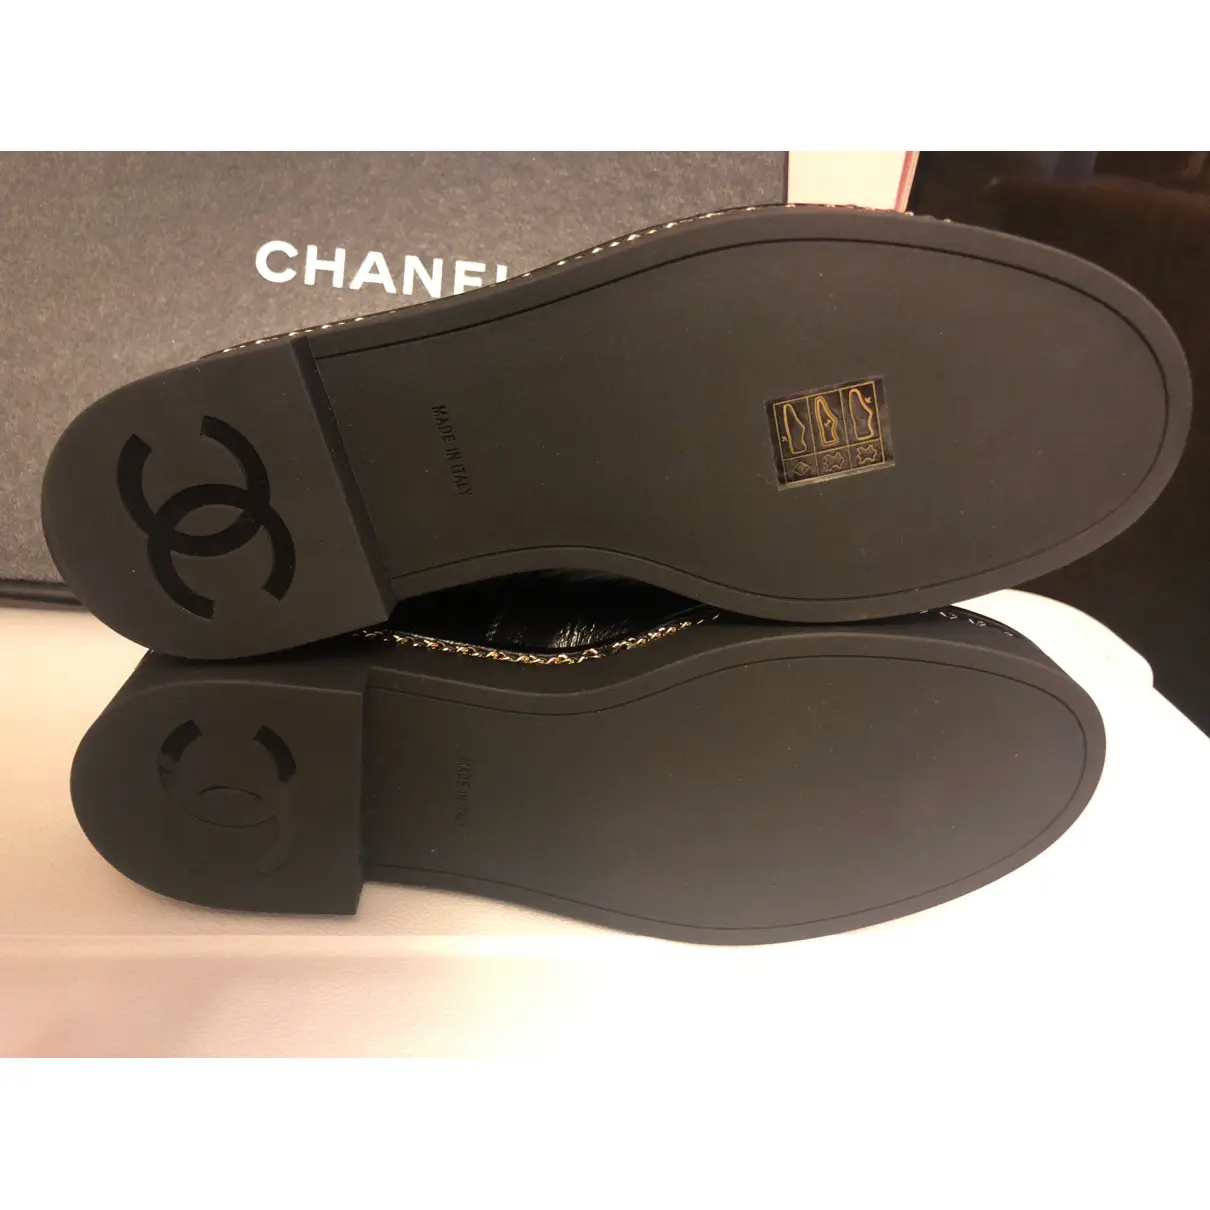 Luxury Chanel Lace ups Women